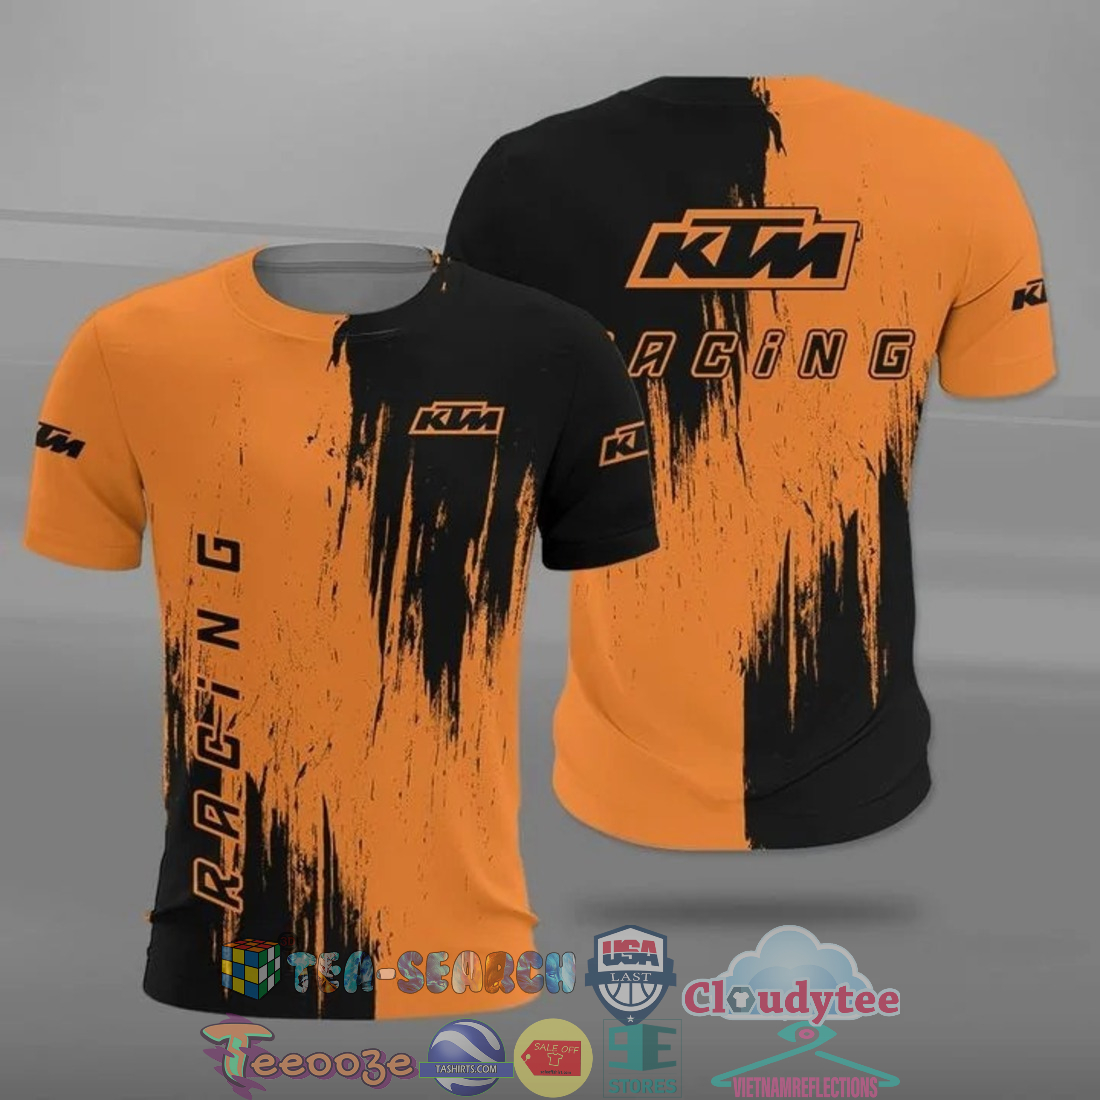 N9rLKwr1-TH130522-47xxxKTM-Racing-ver-2-all-over-printed-t-shirt-hoodie3.jpg